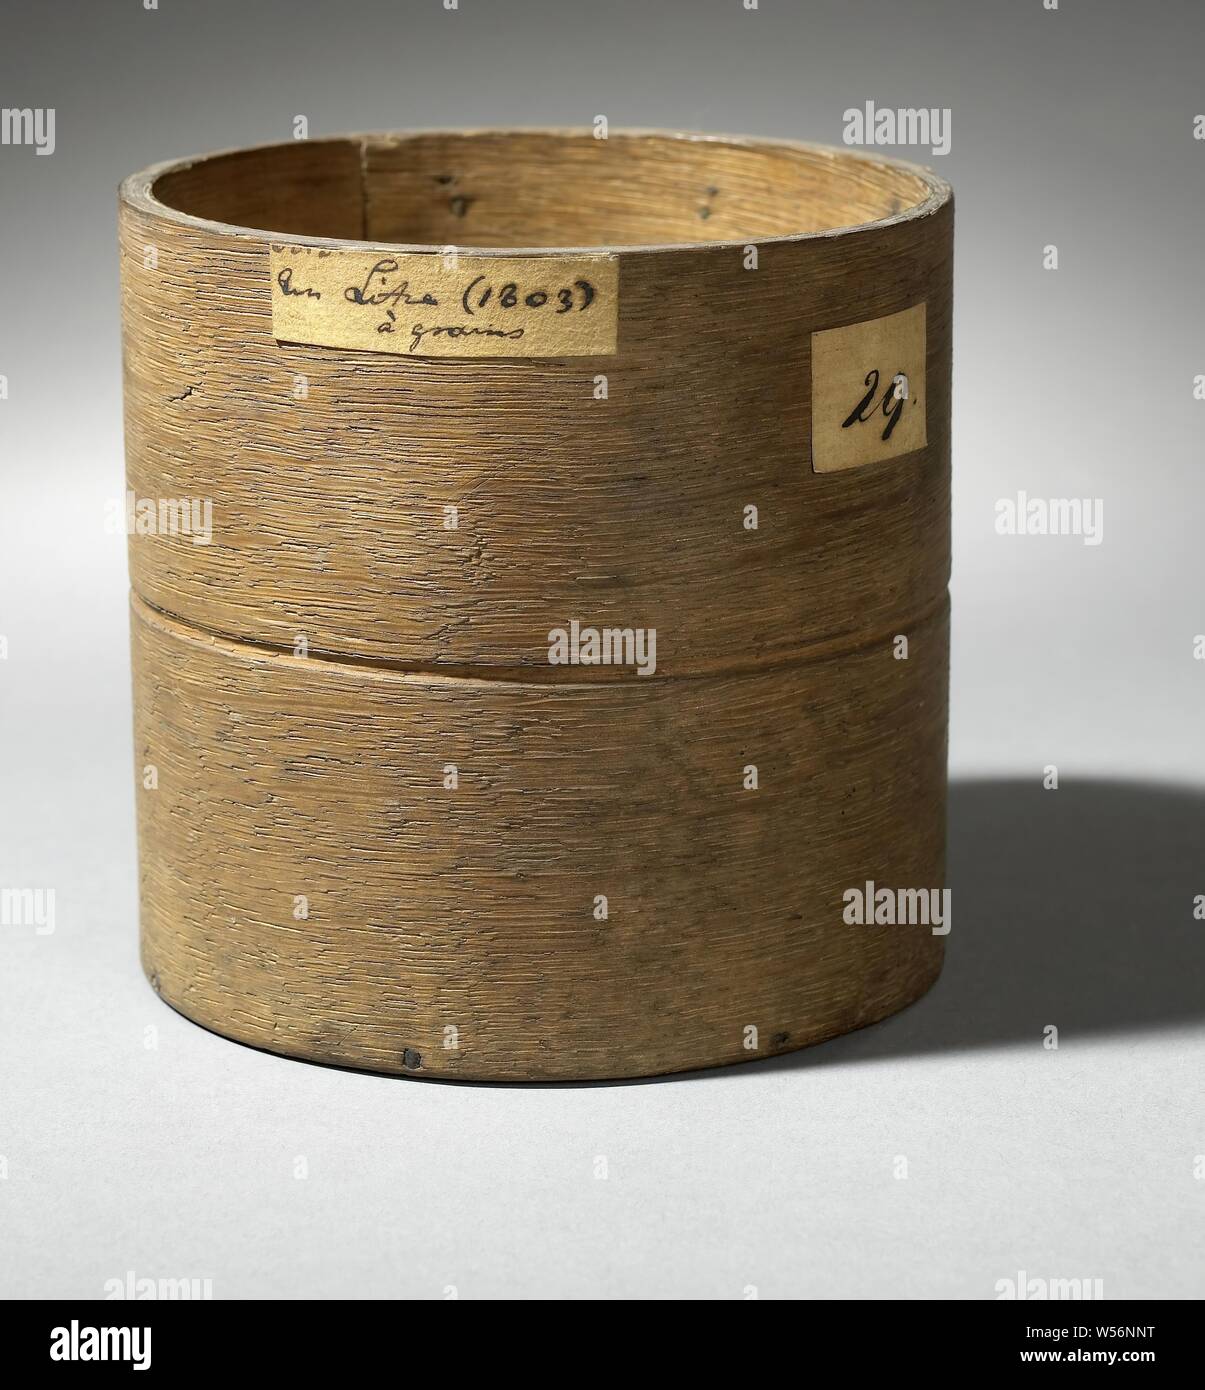 Korngröße von 1 Liter, Holz- korngrösse von 1 Liter mit Label, Niederlande, anonym, 1803, Holz (Pflanzen), h 11 cm x T 12 cm Stockfoto